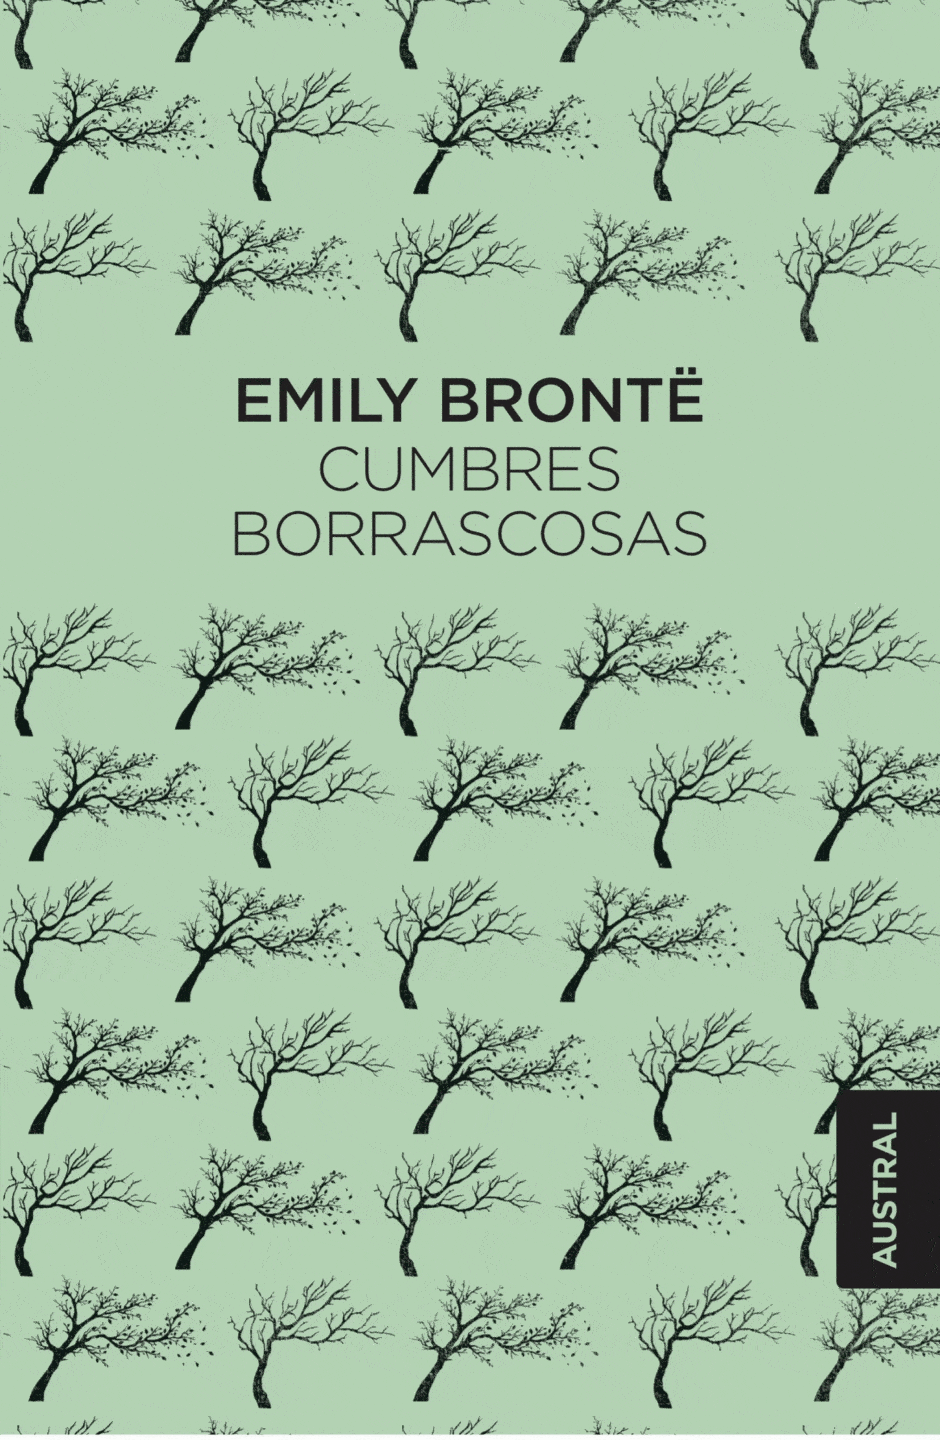 Portada del libro "Cumbres borrascosas", de Emily Brontë